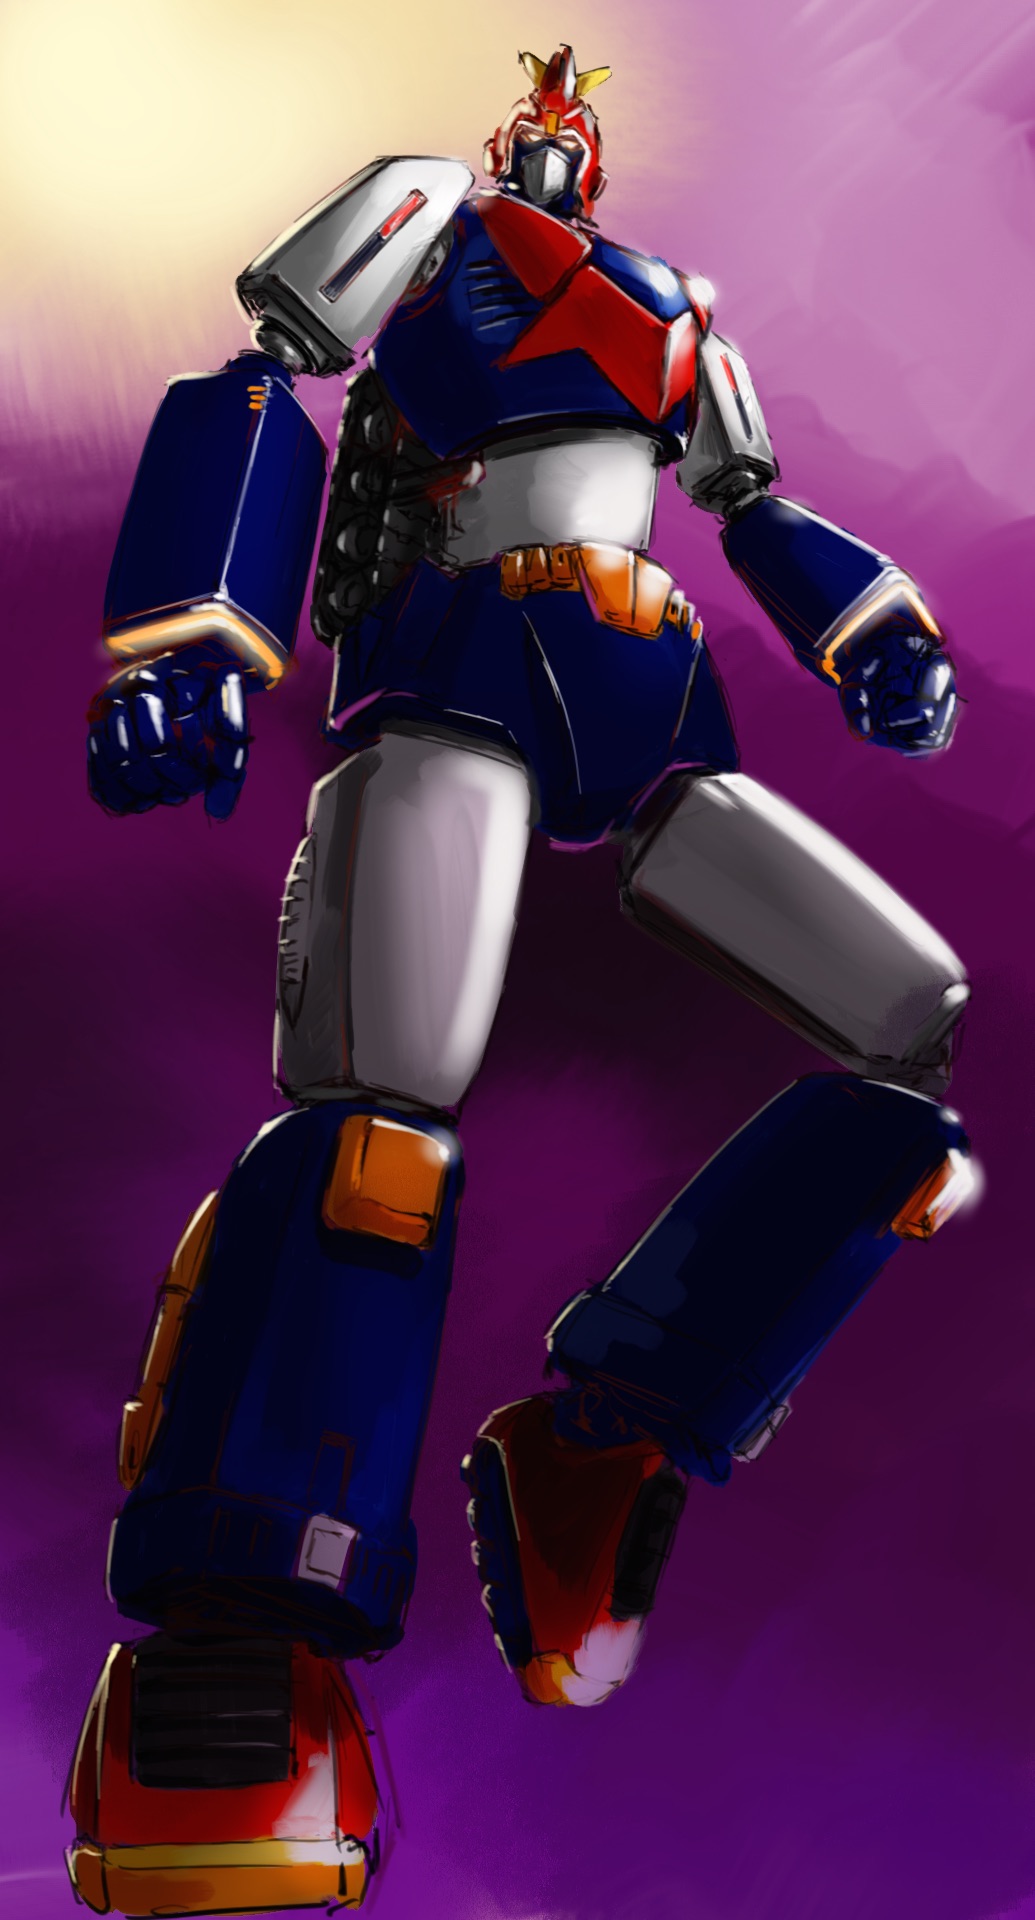 Anime 1035x1920 Voltes V anime mechs Super Robot Taisen artwork digital art fan art